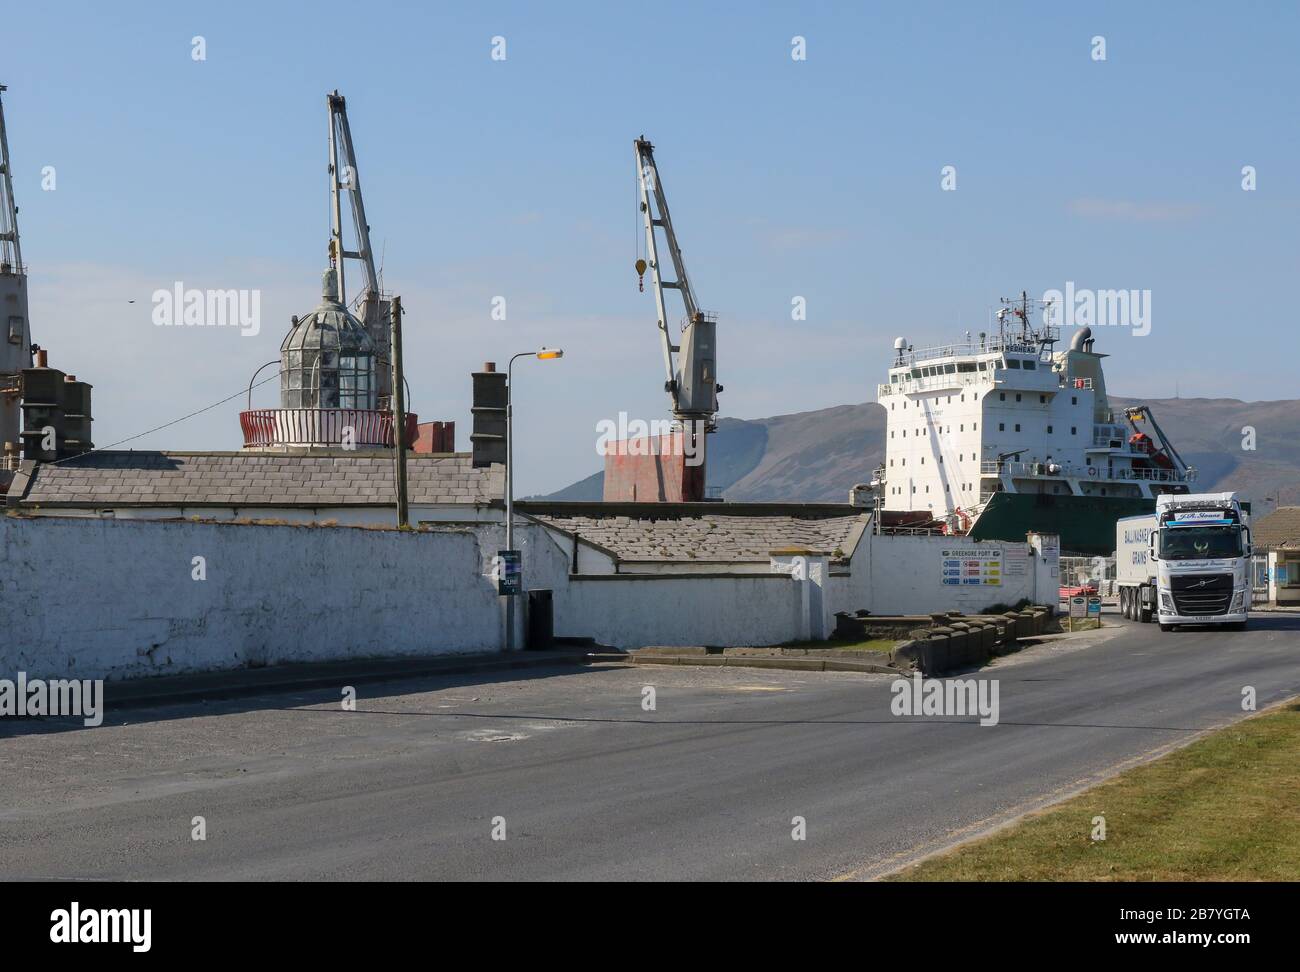 Hafenkräne und Tanker im Hafen von Greenore, County Louth, Ostküste Irlands, während ein Schwerlastfahrzeug den irischen Tiefwasserhafen verlässt. Stockfoto